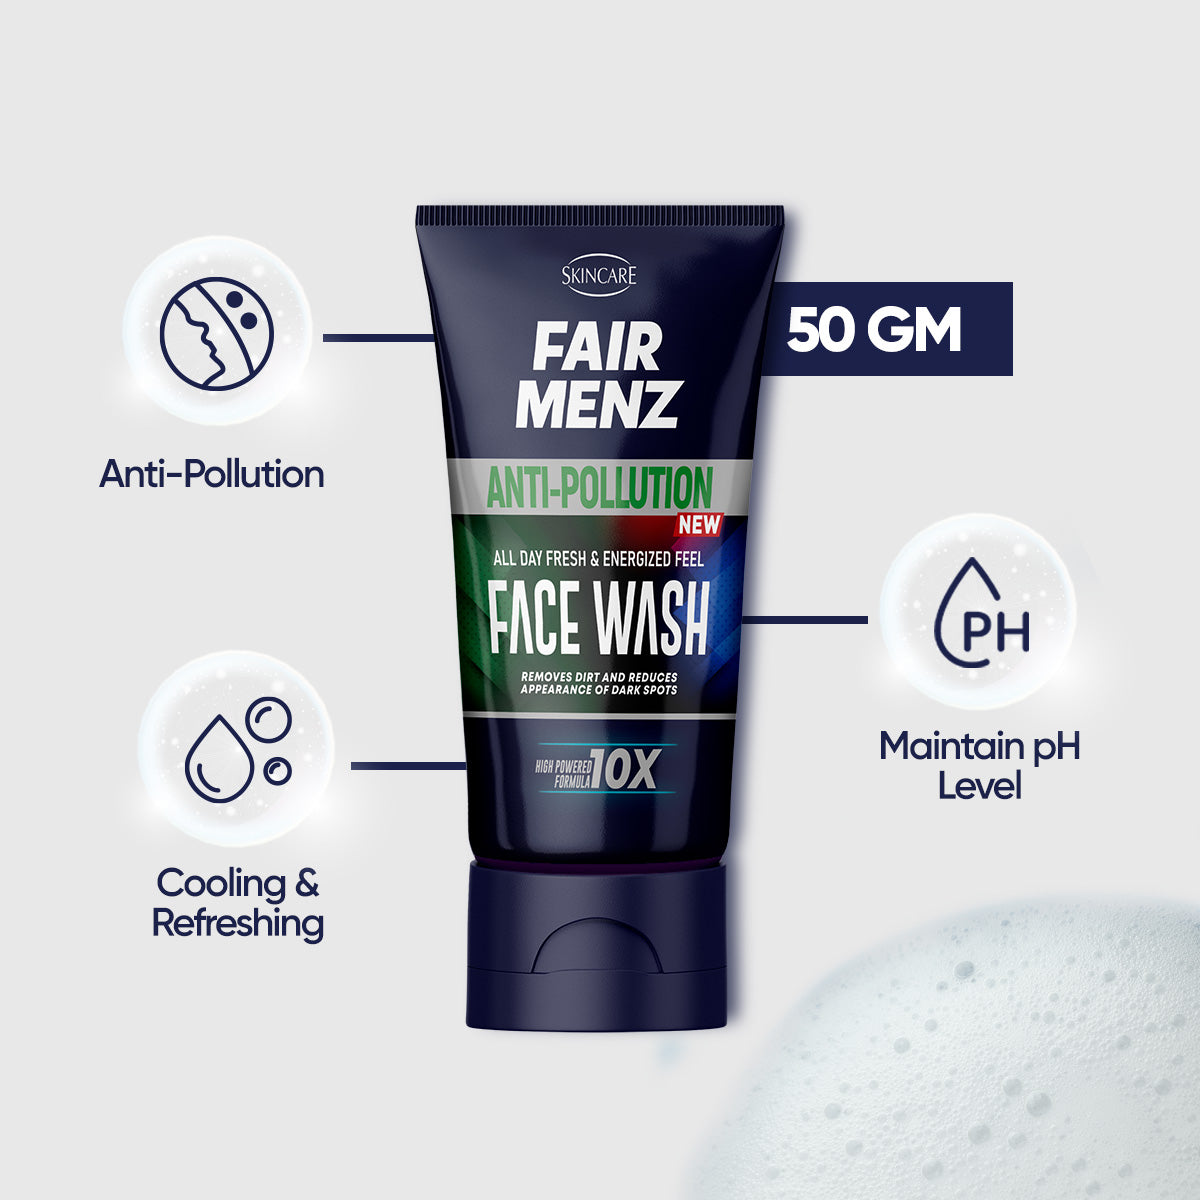 Fair menz Anti Pollution Face wash 10X Formula